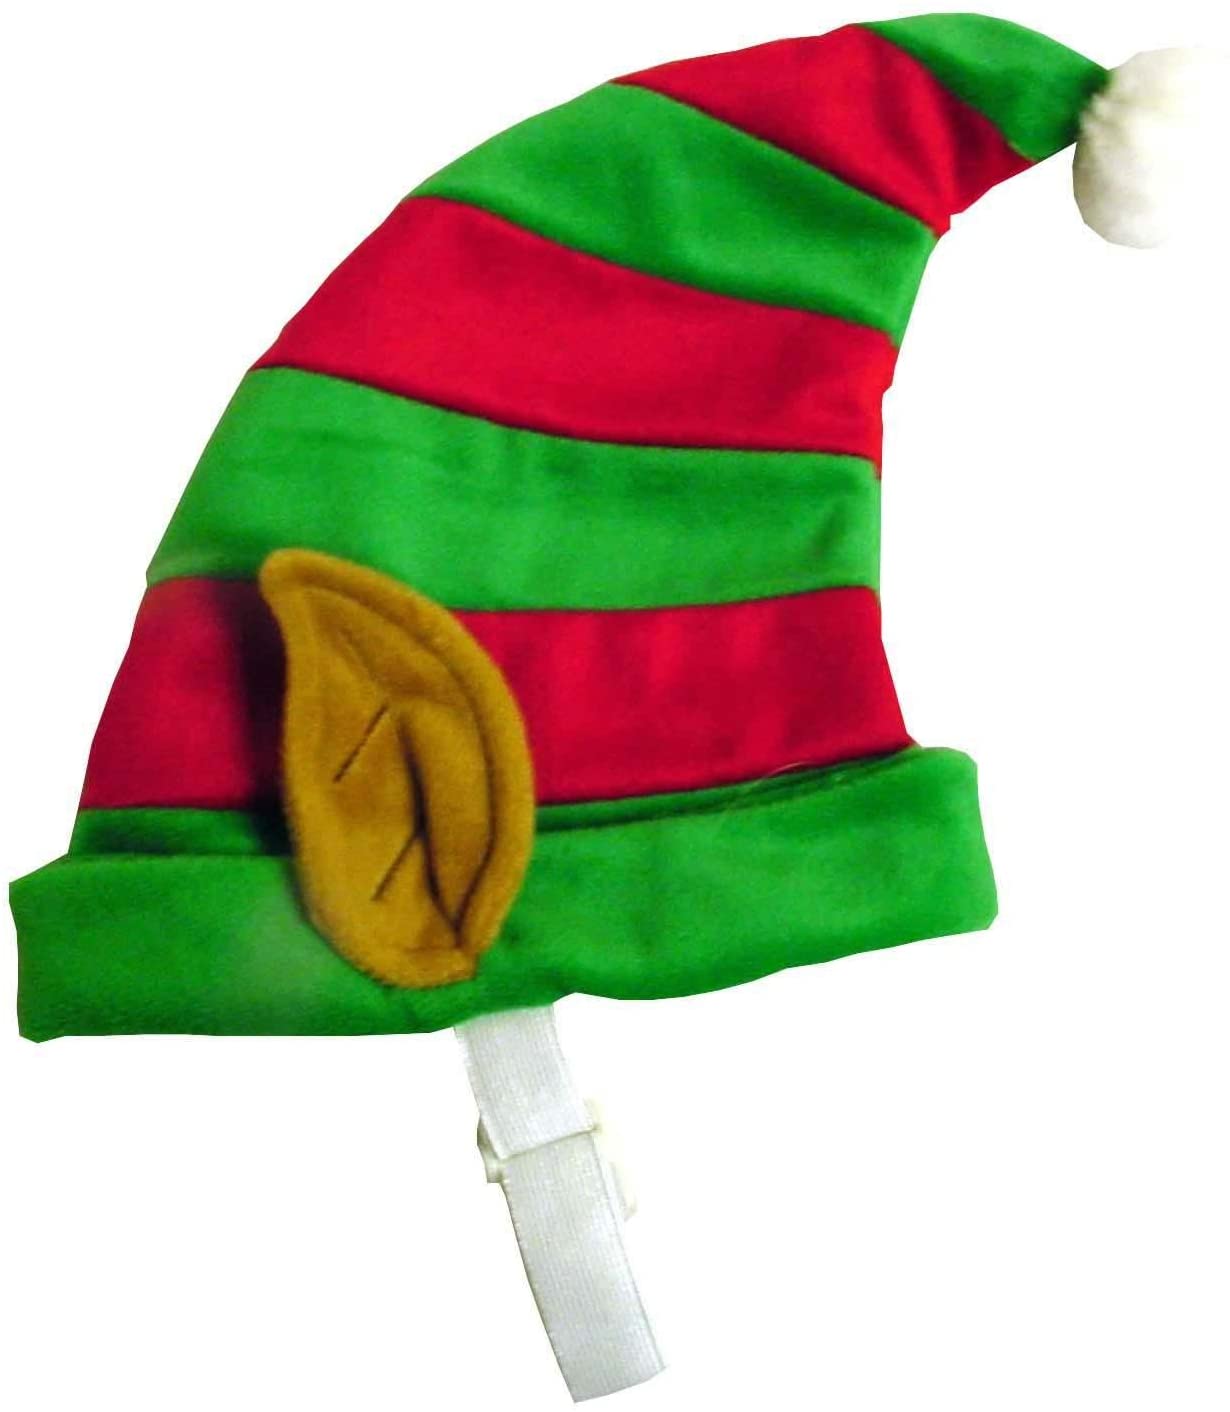  Outward Hound Perro Gorro de Elfo Mascota de Navidad Vacaciones y Accesorios, Color Rojo y Verde 